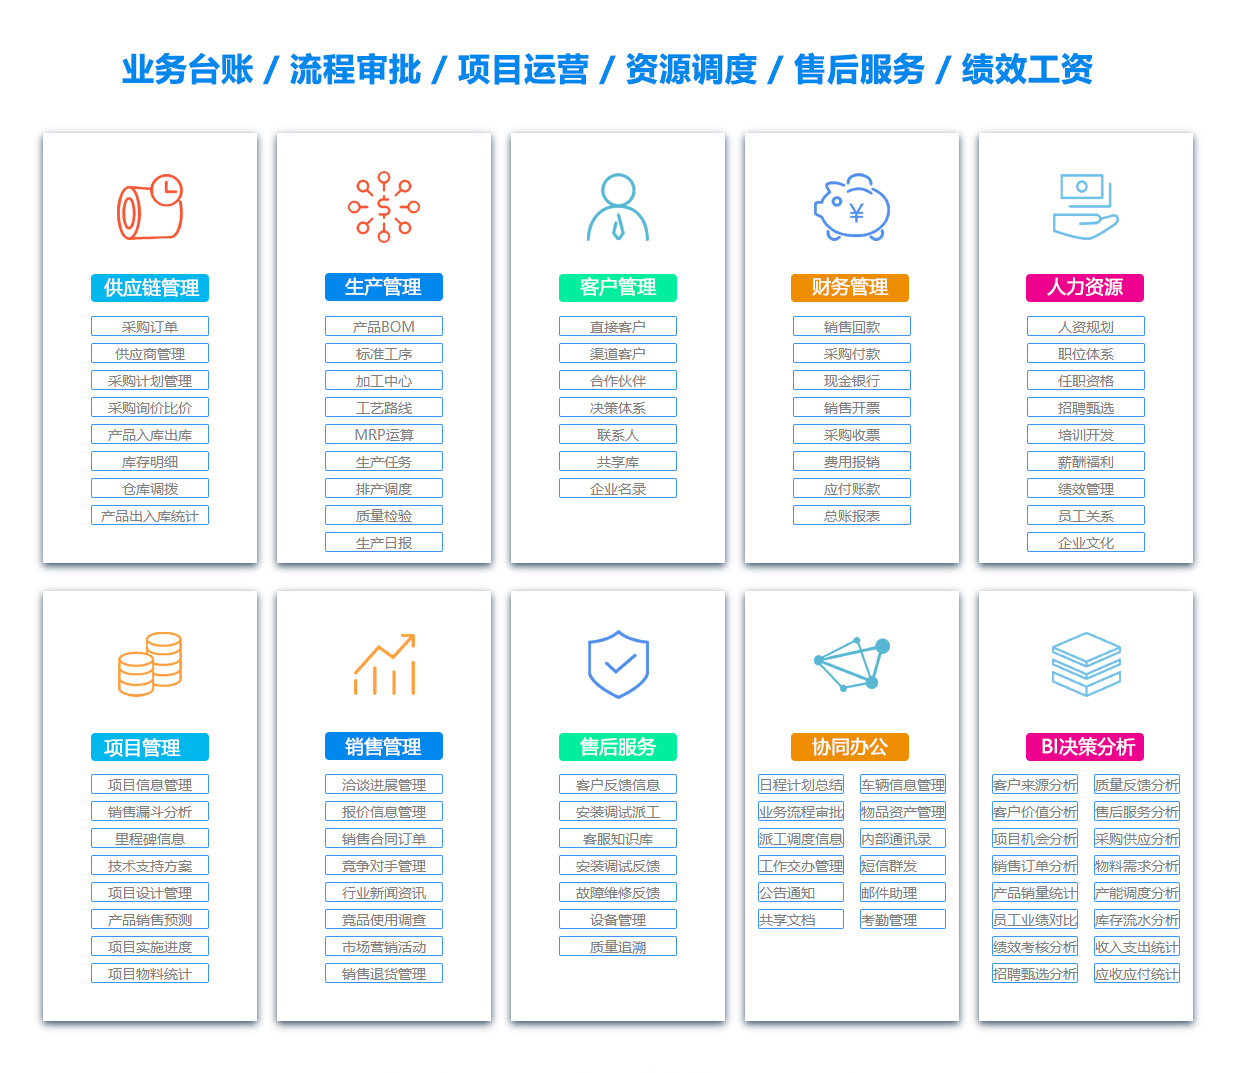 杭州PDM:产品数据管理系统